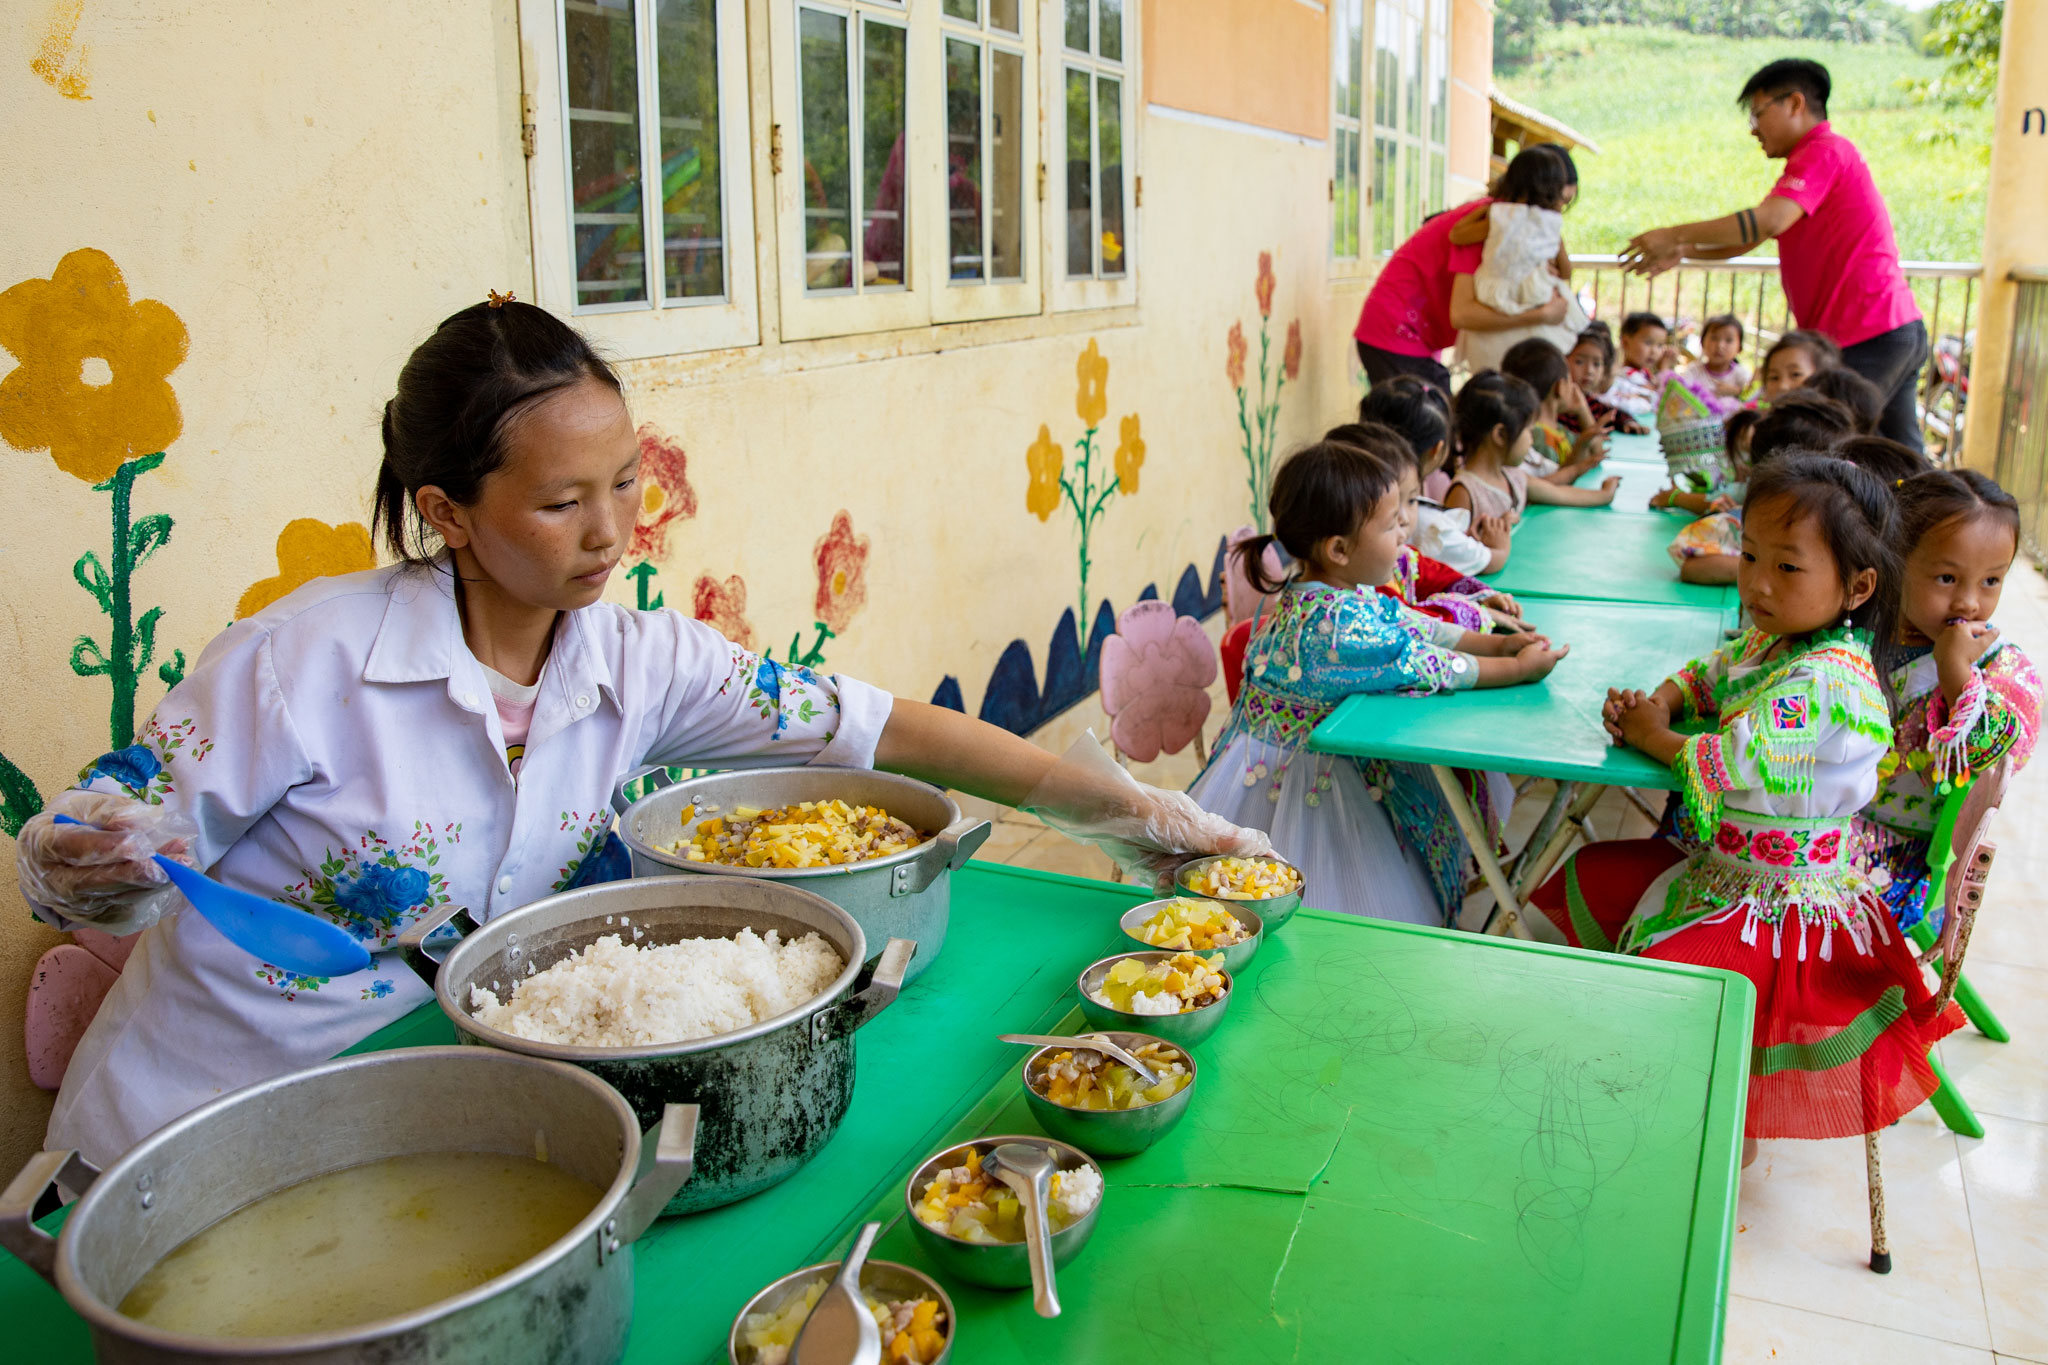 Theo báo cáo của các trường, nhờ có những bữa ăn bán trú dinh dưỡng, 100% trẻ đi học đầy đủ, và rất háo hức được đến trường mỗi ngày. Trẻ đi học đều hơn, sự phát triển thể chất, kỹ năng về ngôn ngữ, nhận thức và kỹ năng xã hội.